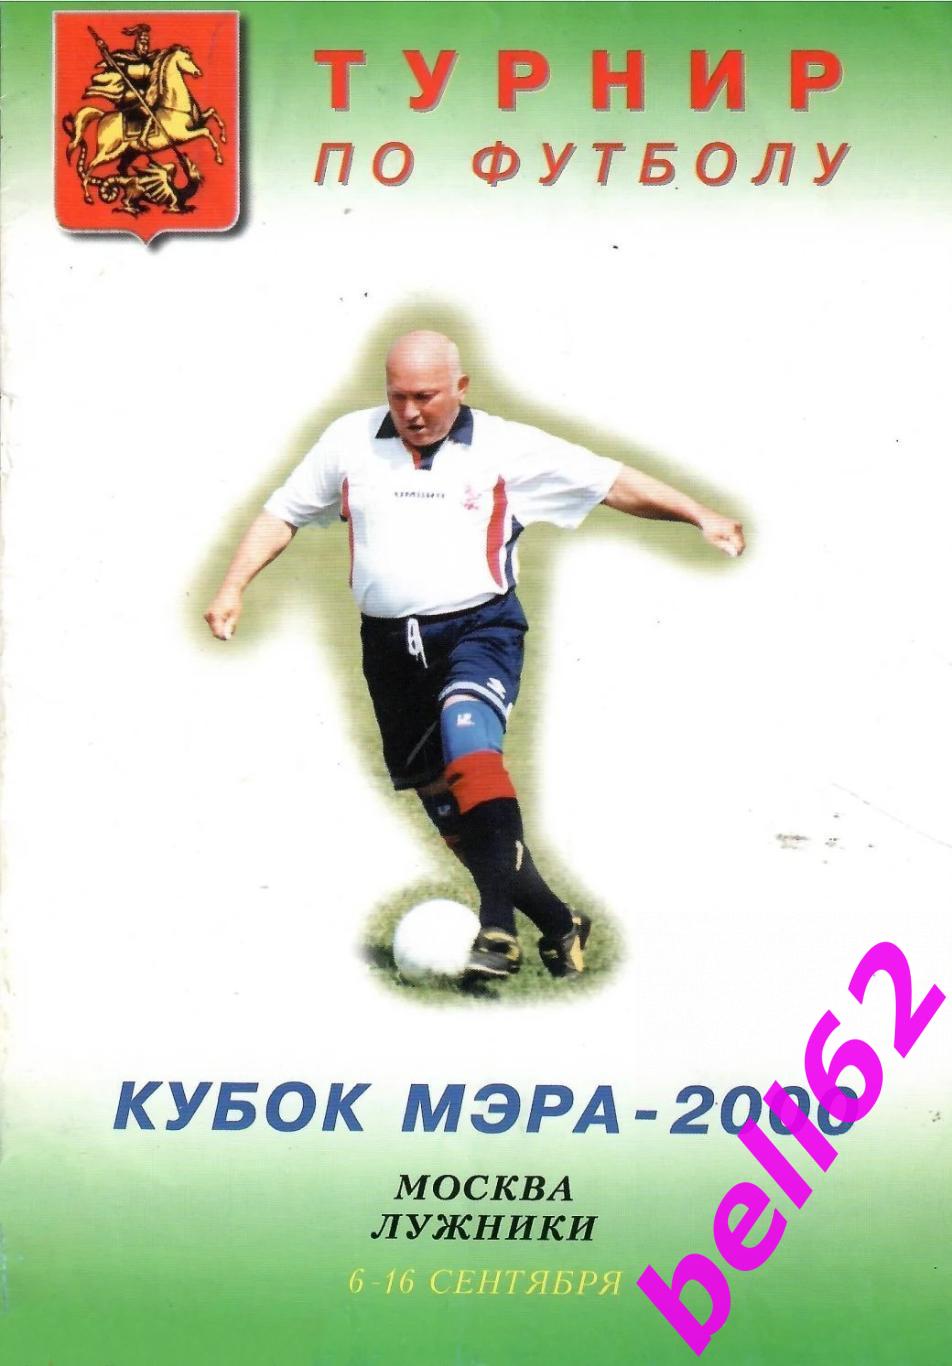 Турнир Кубок Мэра Москвы по футболу-6-16.09.2000 г.